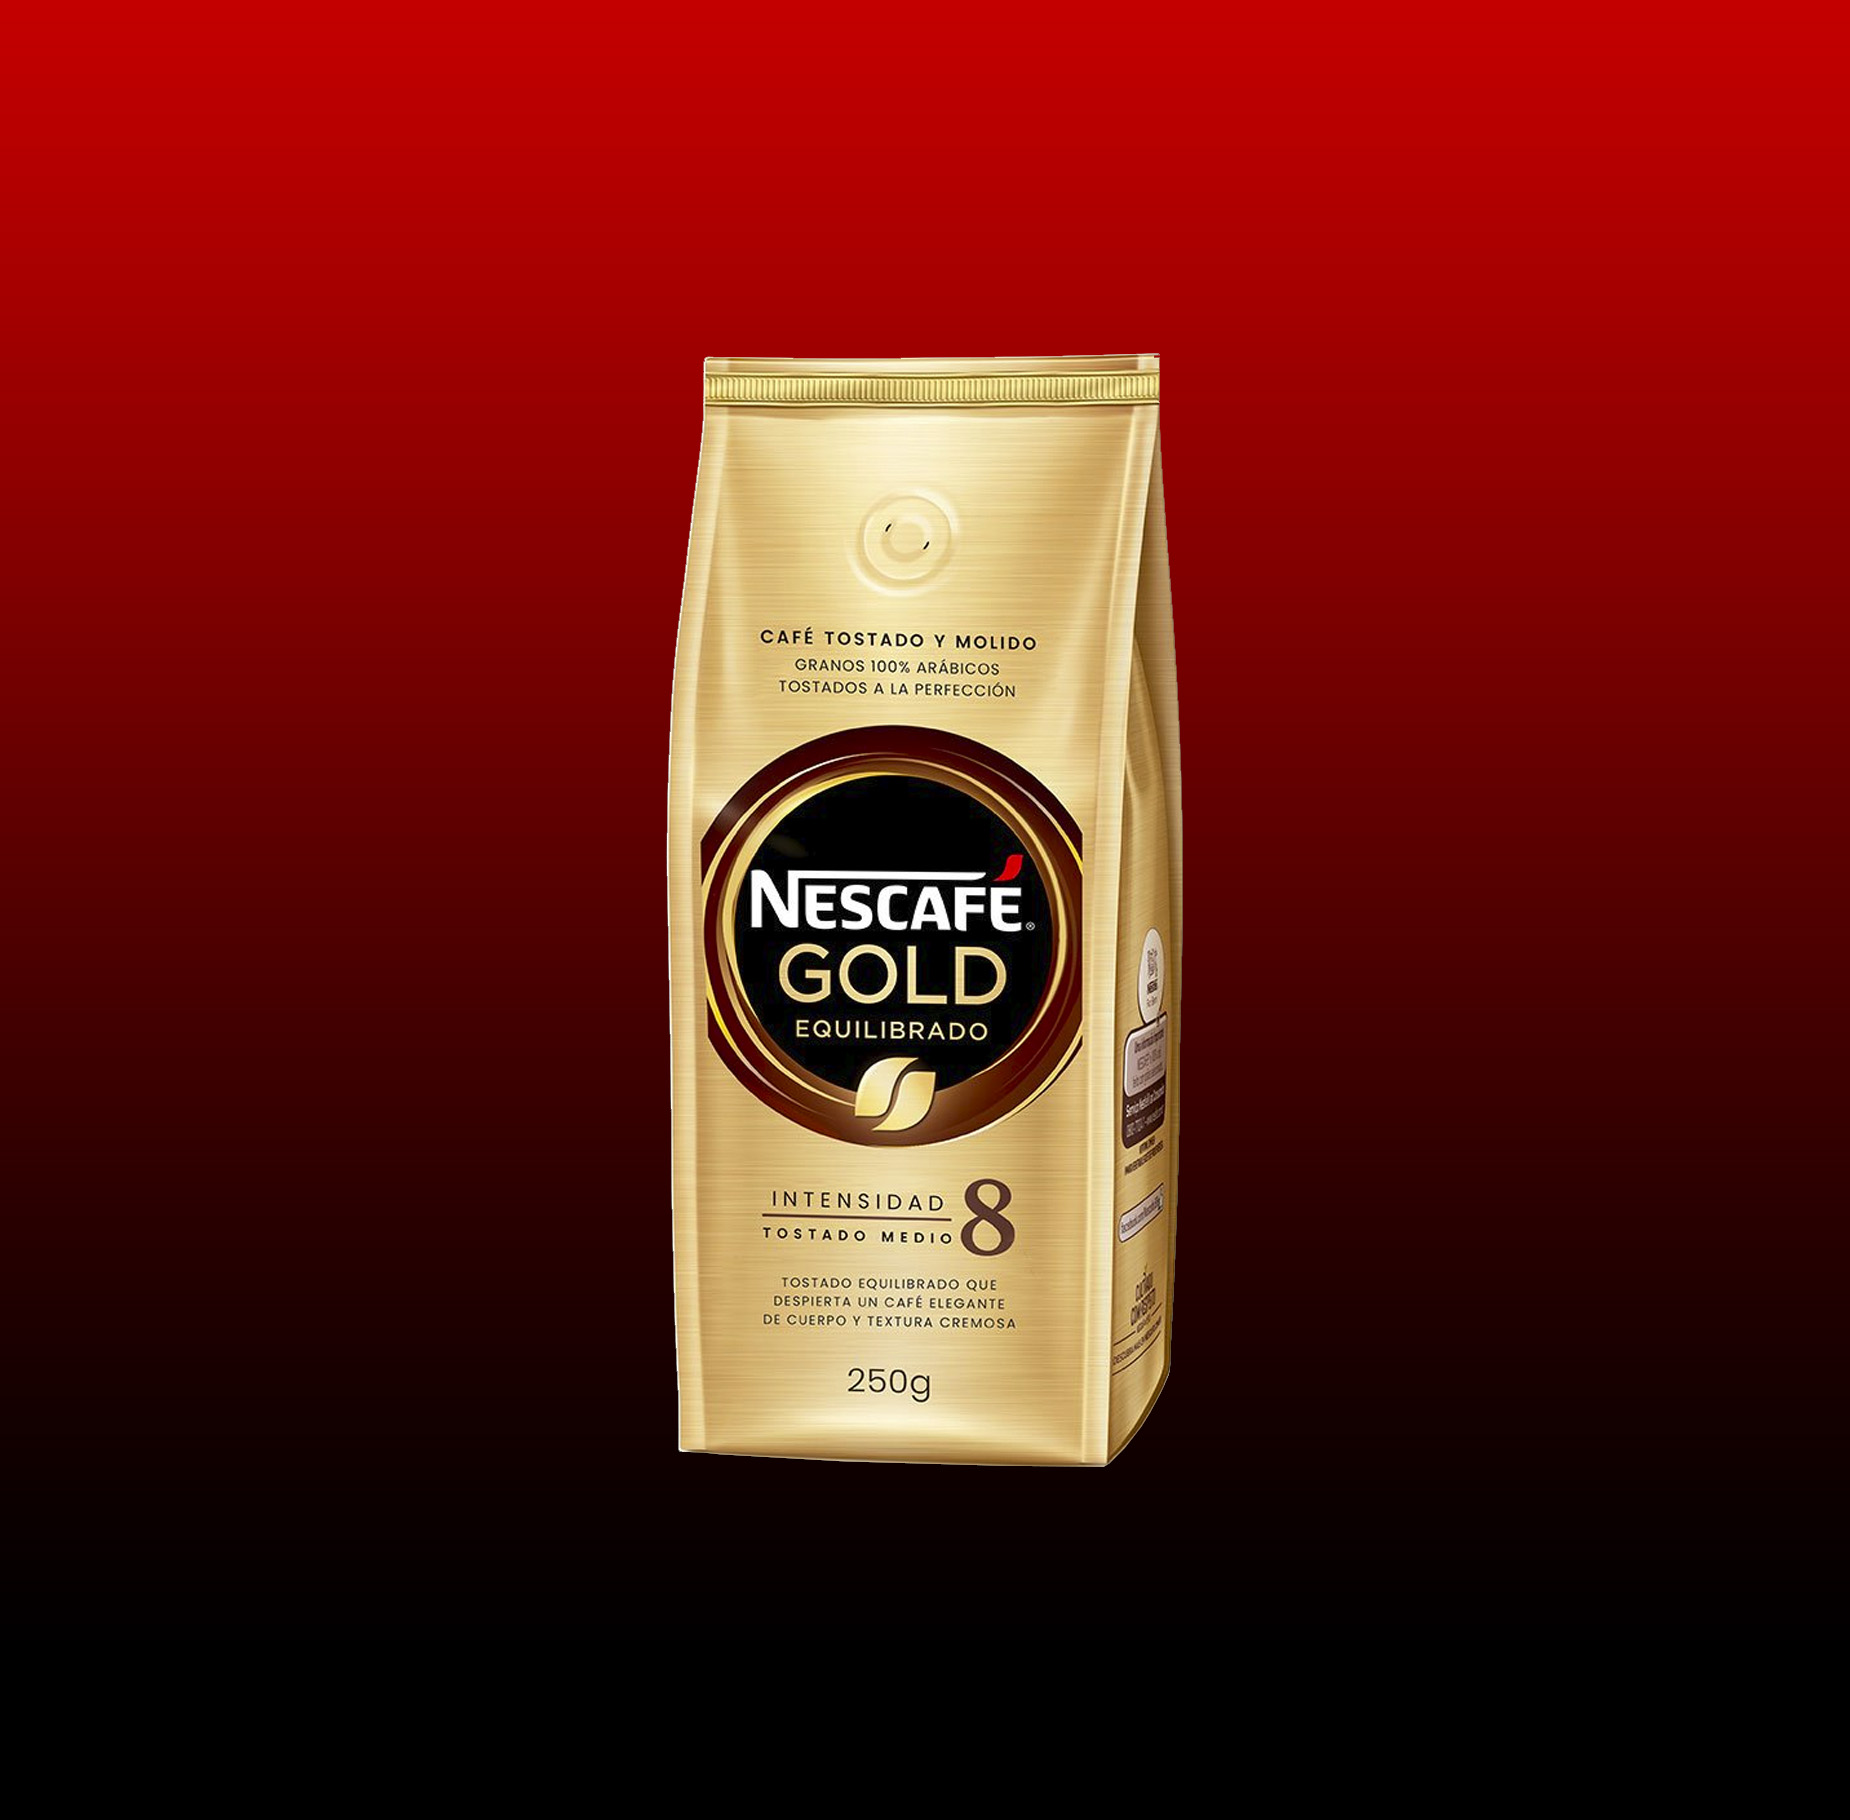 Nescafe Gold 8 250g